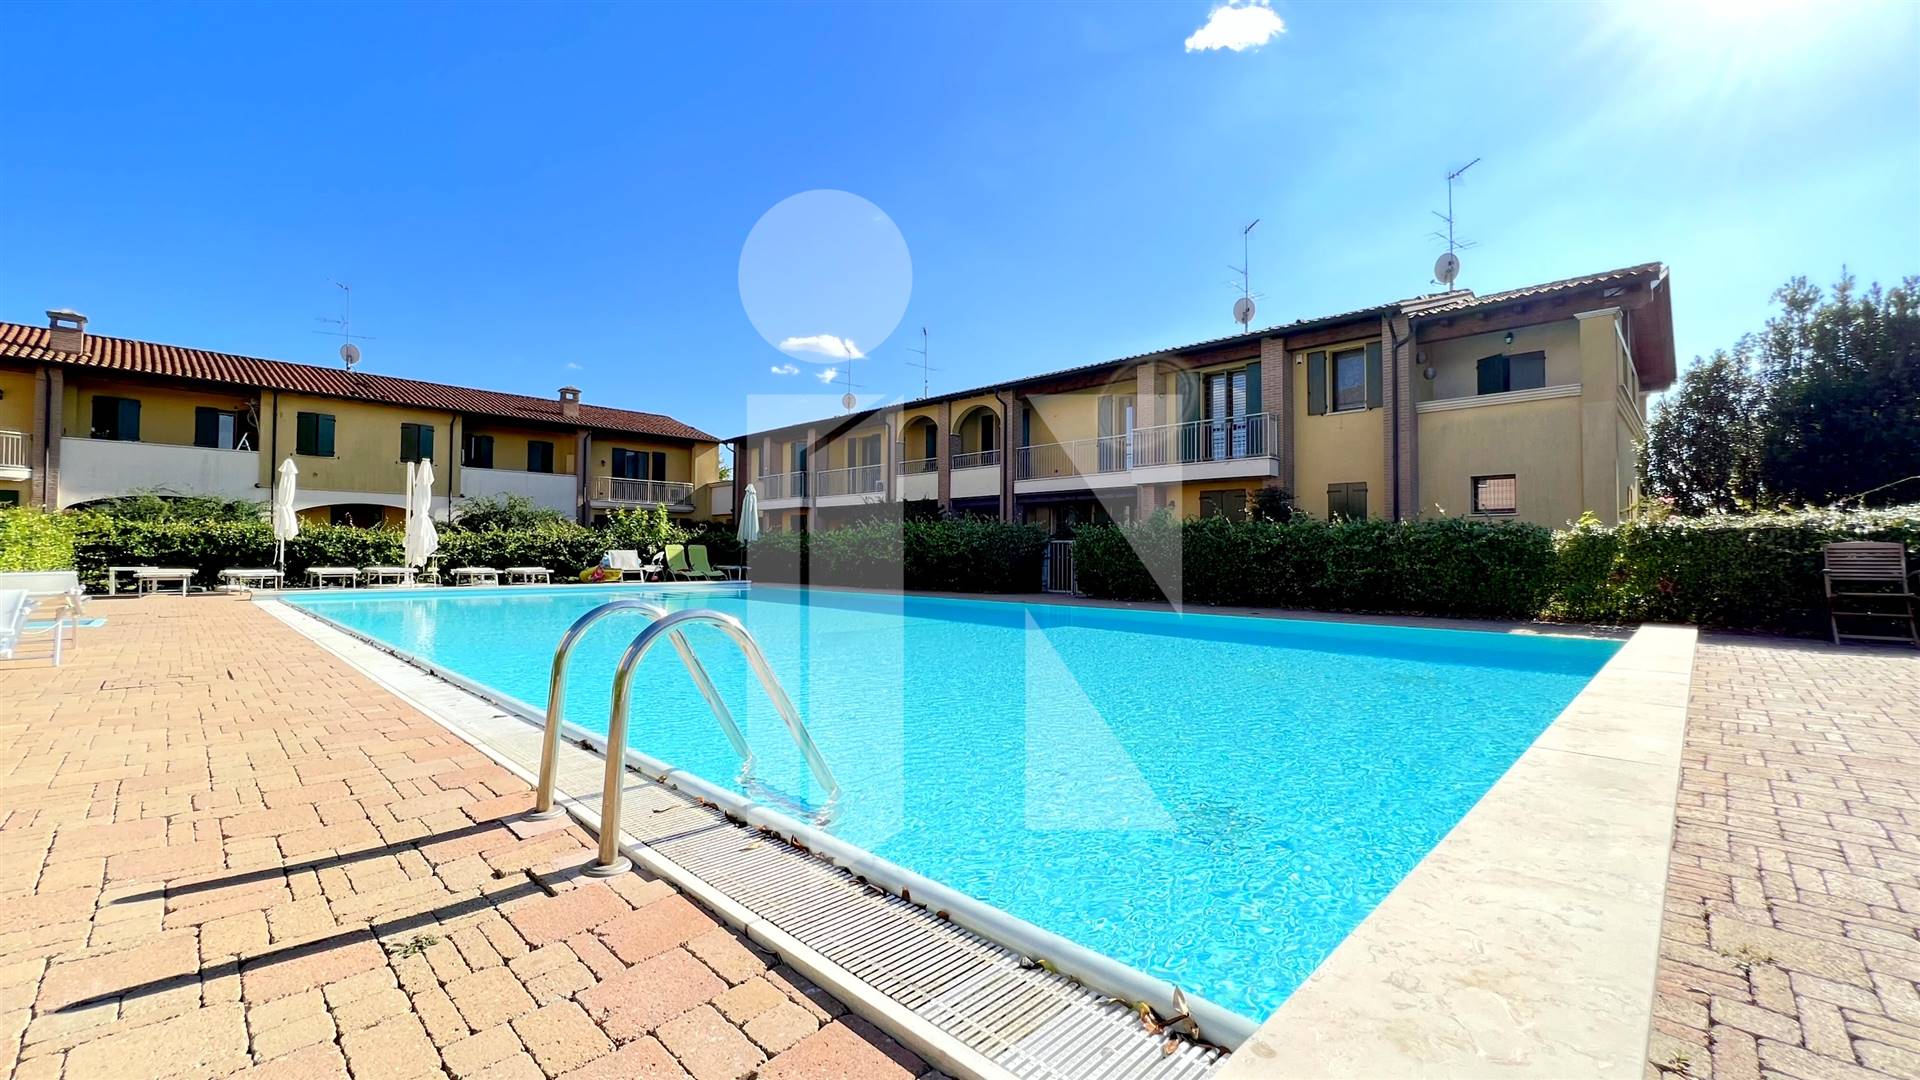 Villa in residence con piscina